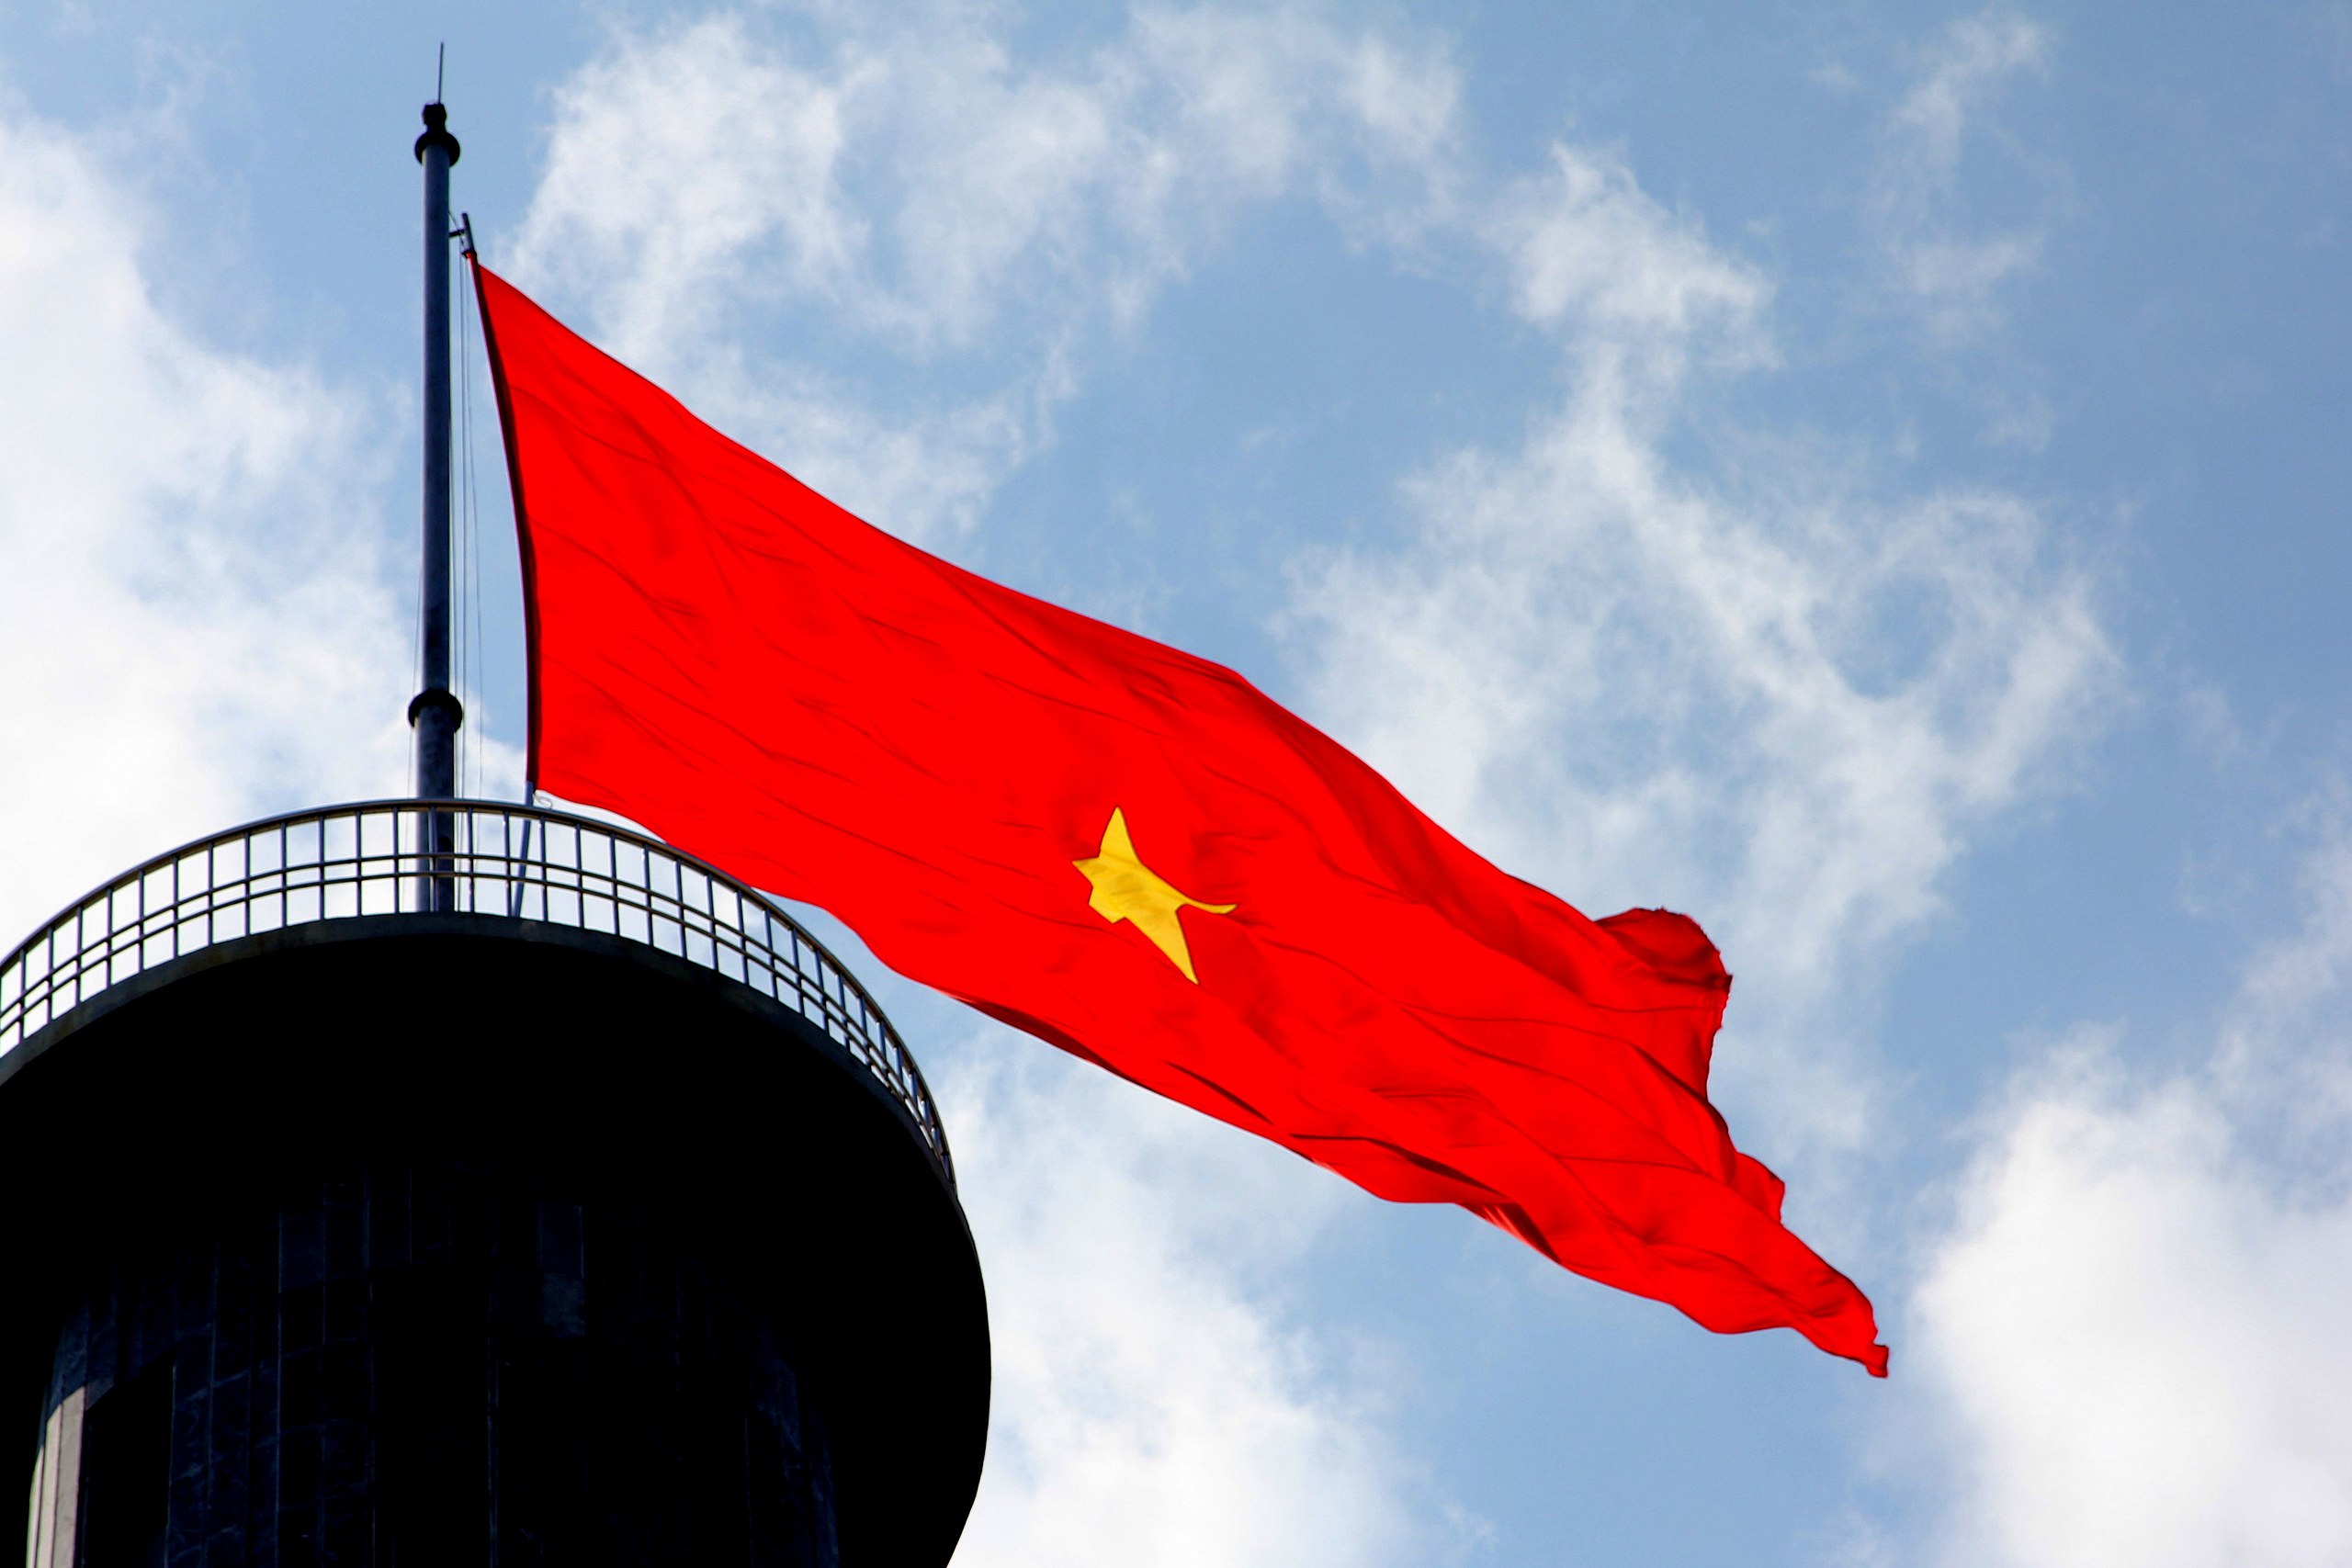 Cùng chiêm ngưỡng những tấm lá cờ Việt Nam bay phất trong gió, thể hiện sự kiêu hùng và niềm tự hào dành cho quốc gia.